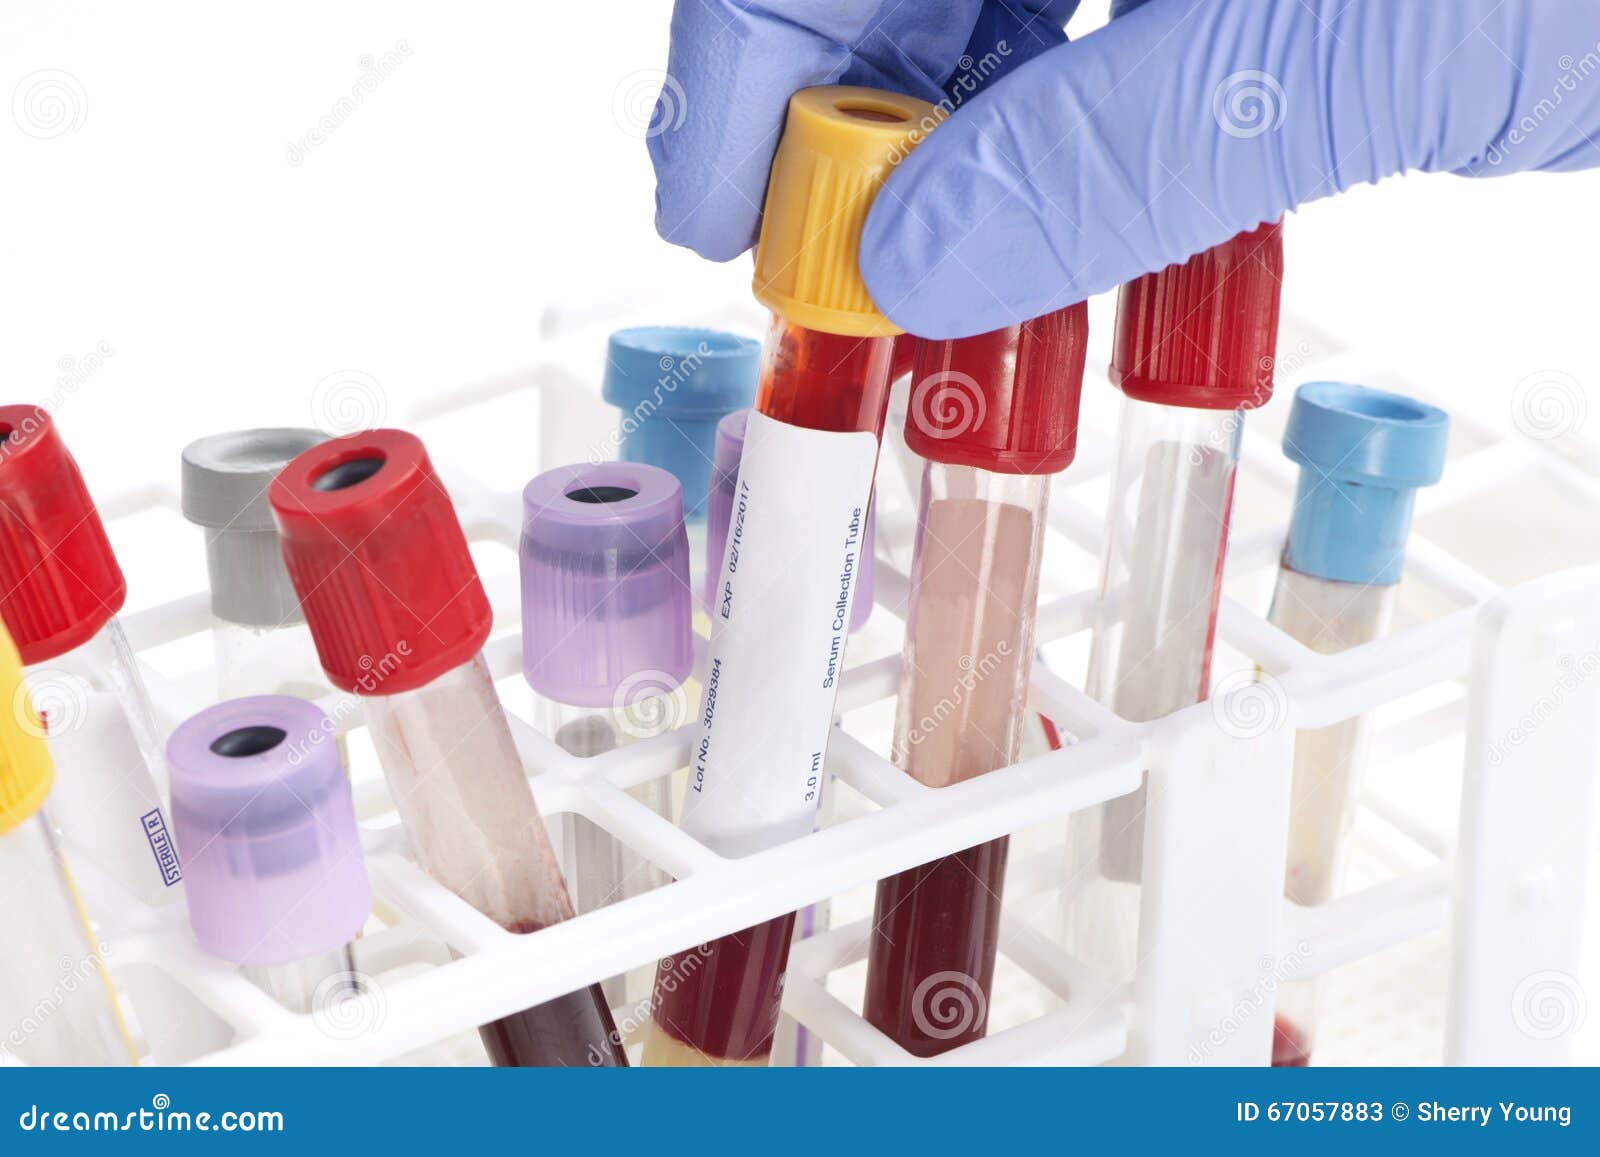 Sample collections. Пробирки для гематологии. Пробирка для крови из пальца. Пробирка для исследования крови на глюкозу. (Holder) лаборатория.